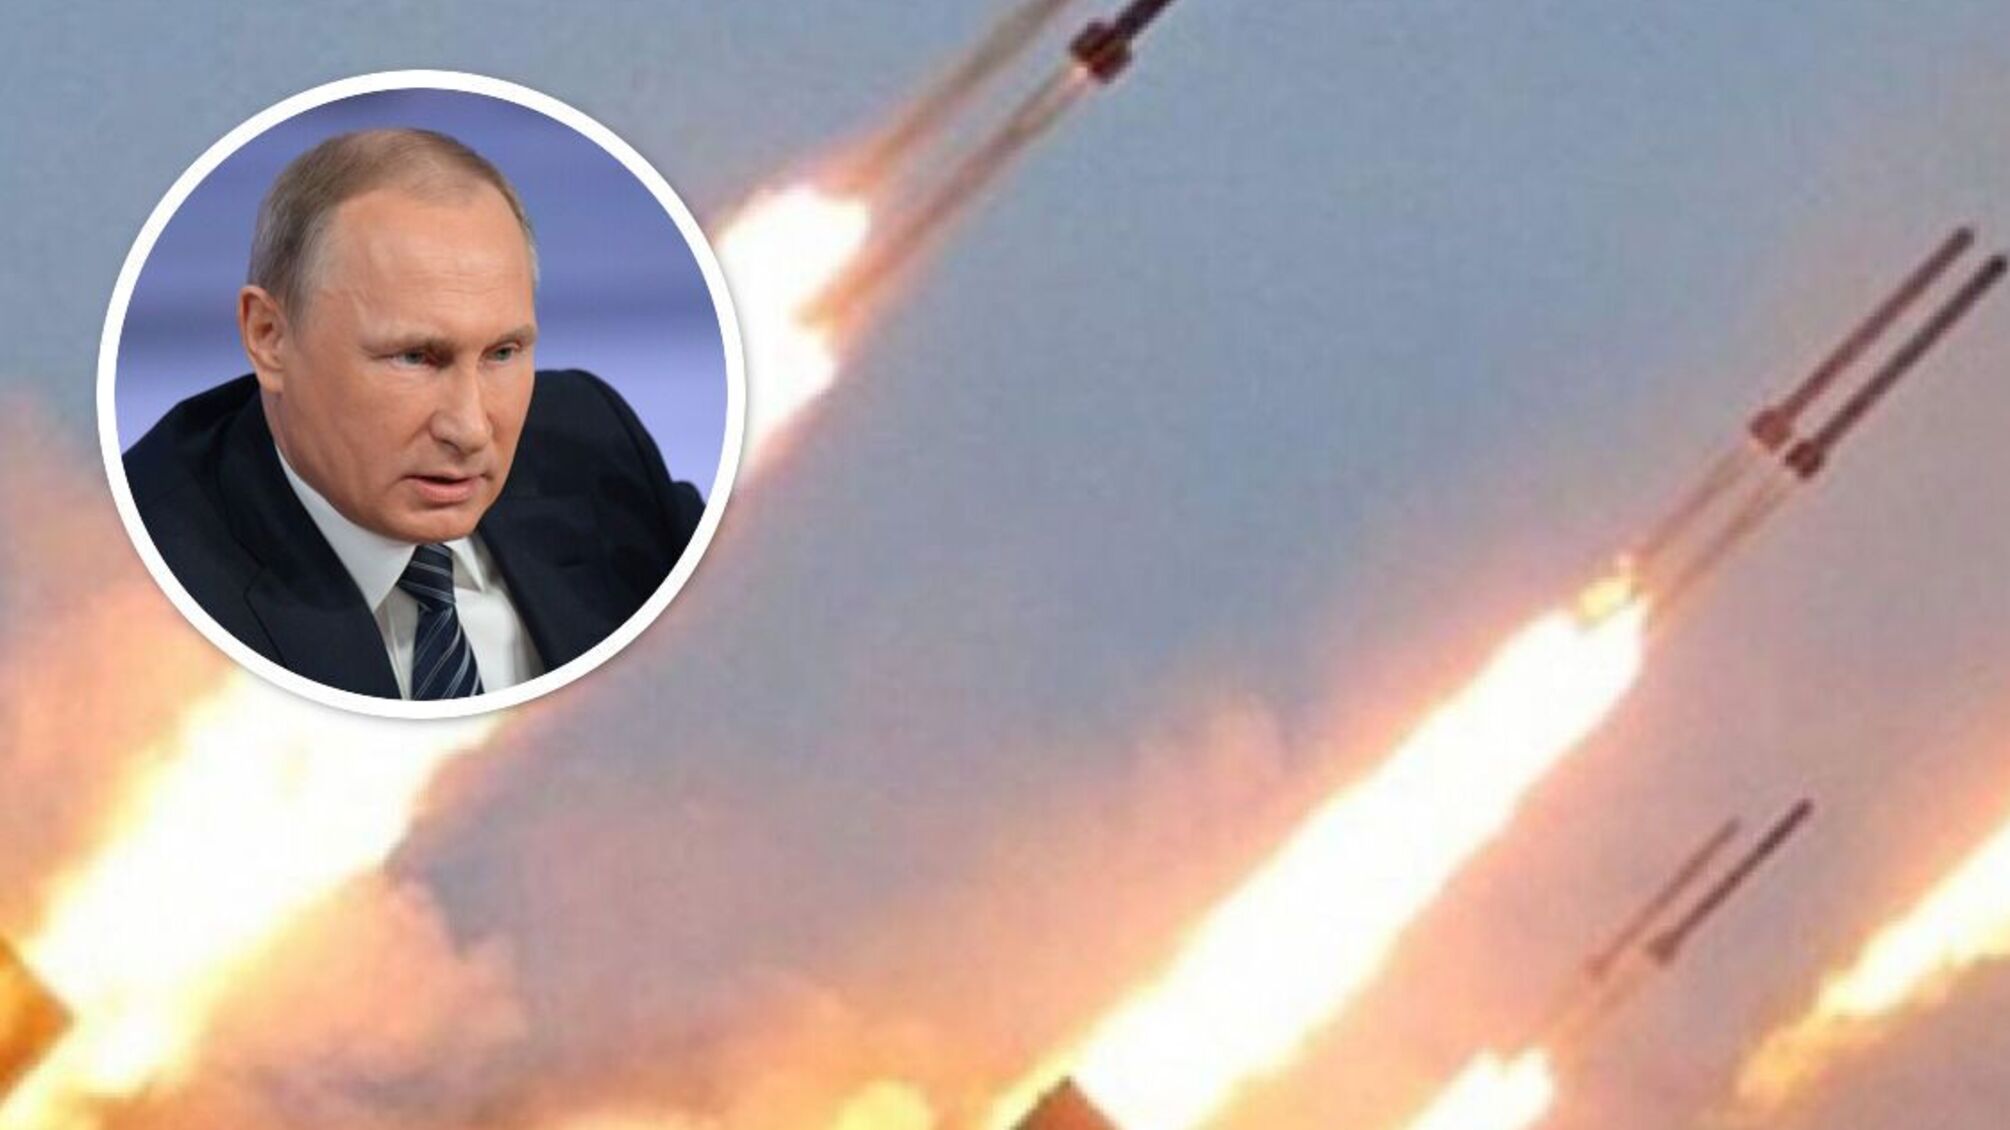 РФ все ще намагається залякати Україну, – Подоляк про масований ракетний обстріл